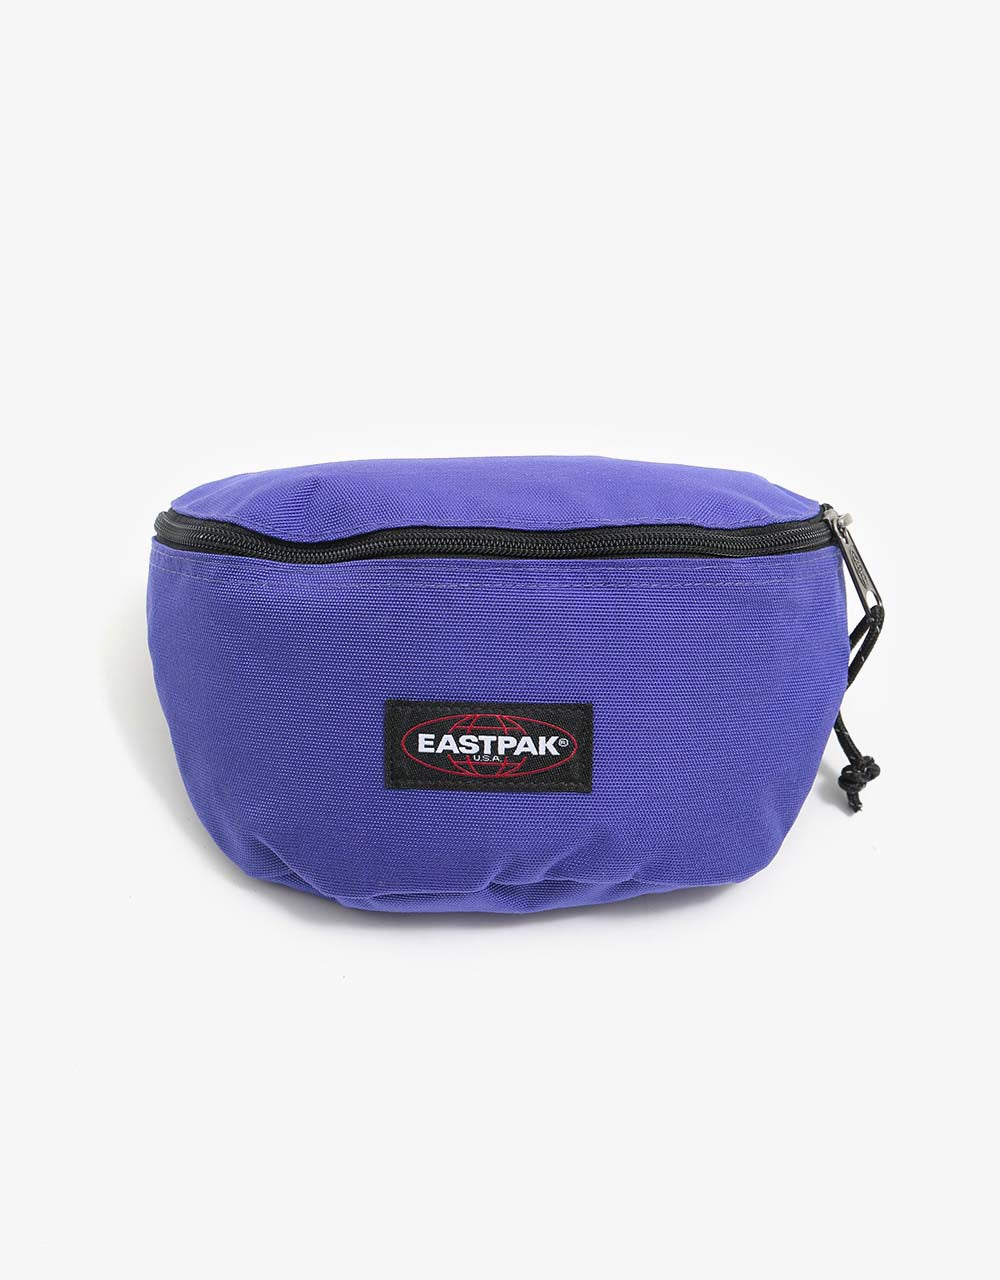 Eastpak Springer Cross Body Bag - Amethyst Purple